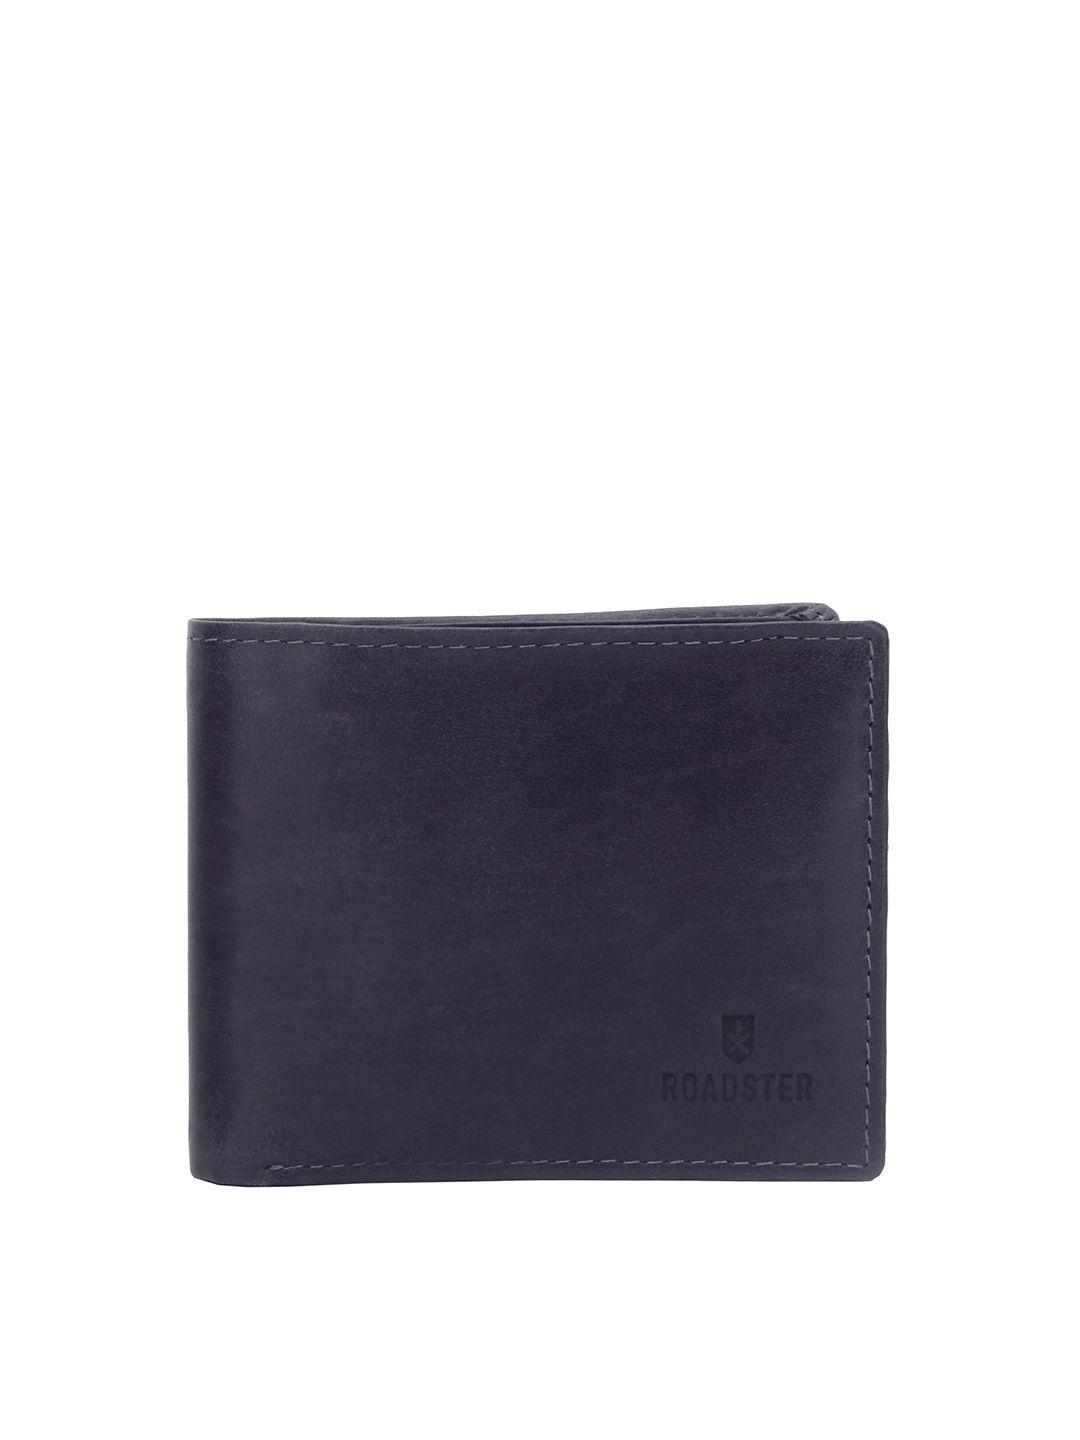 roadster black men leather two fold wallet